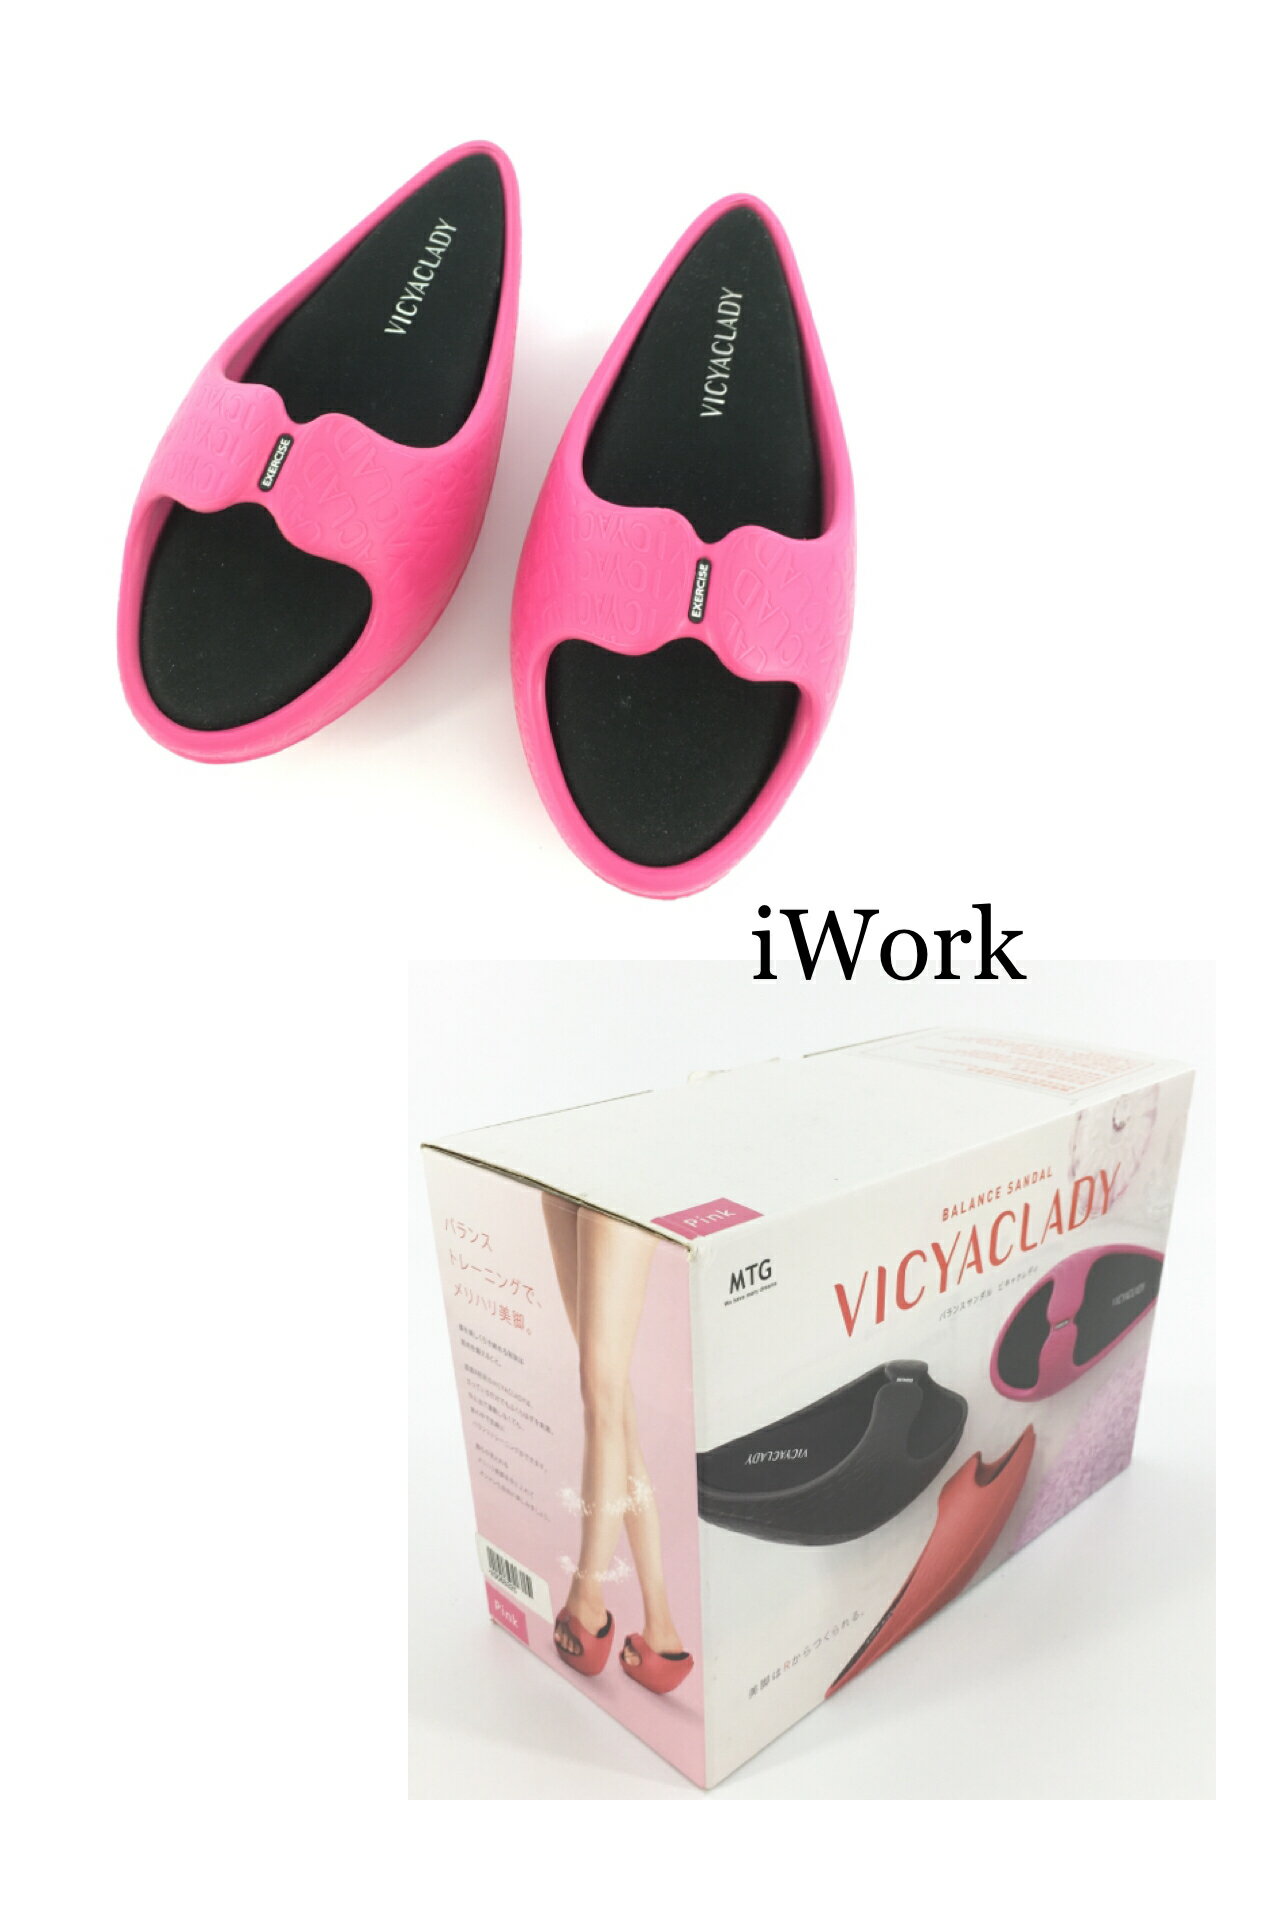 <br/><br/>  【iWork】10006 【日本MTG】VICYACLADY 美體平衡拖鞋 ，質感舒服、美體訓練圓弧形，顏色紅色及粉紅色〔美體、美姿美儀訓練好幫手〕<br/><br/>